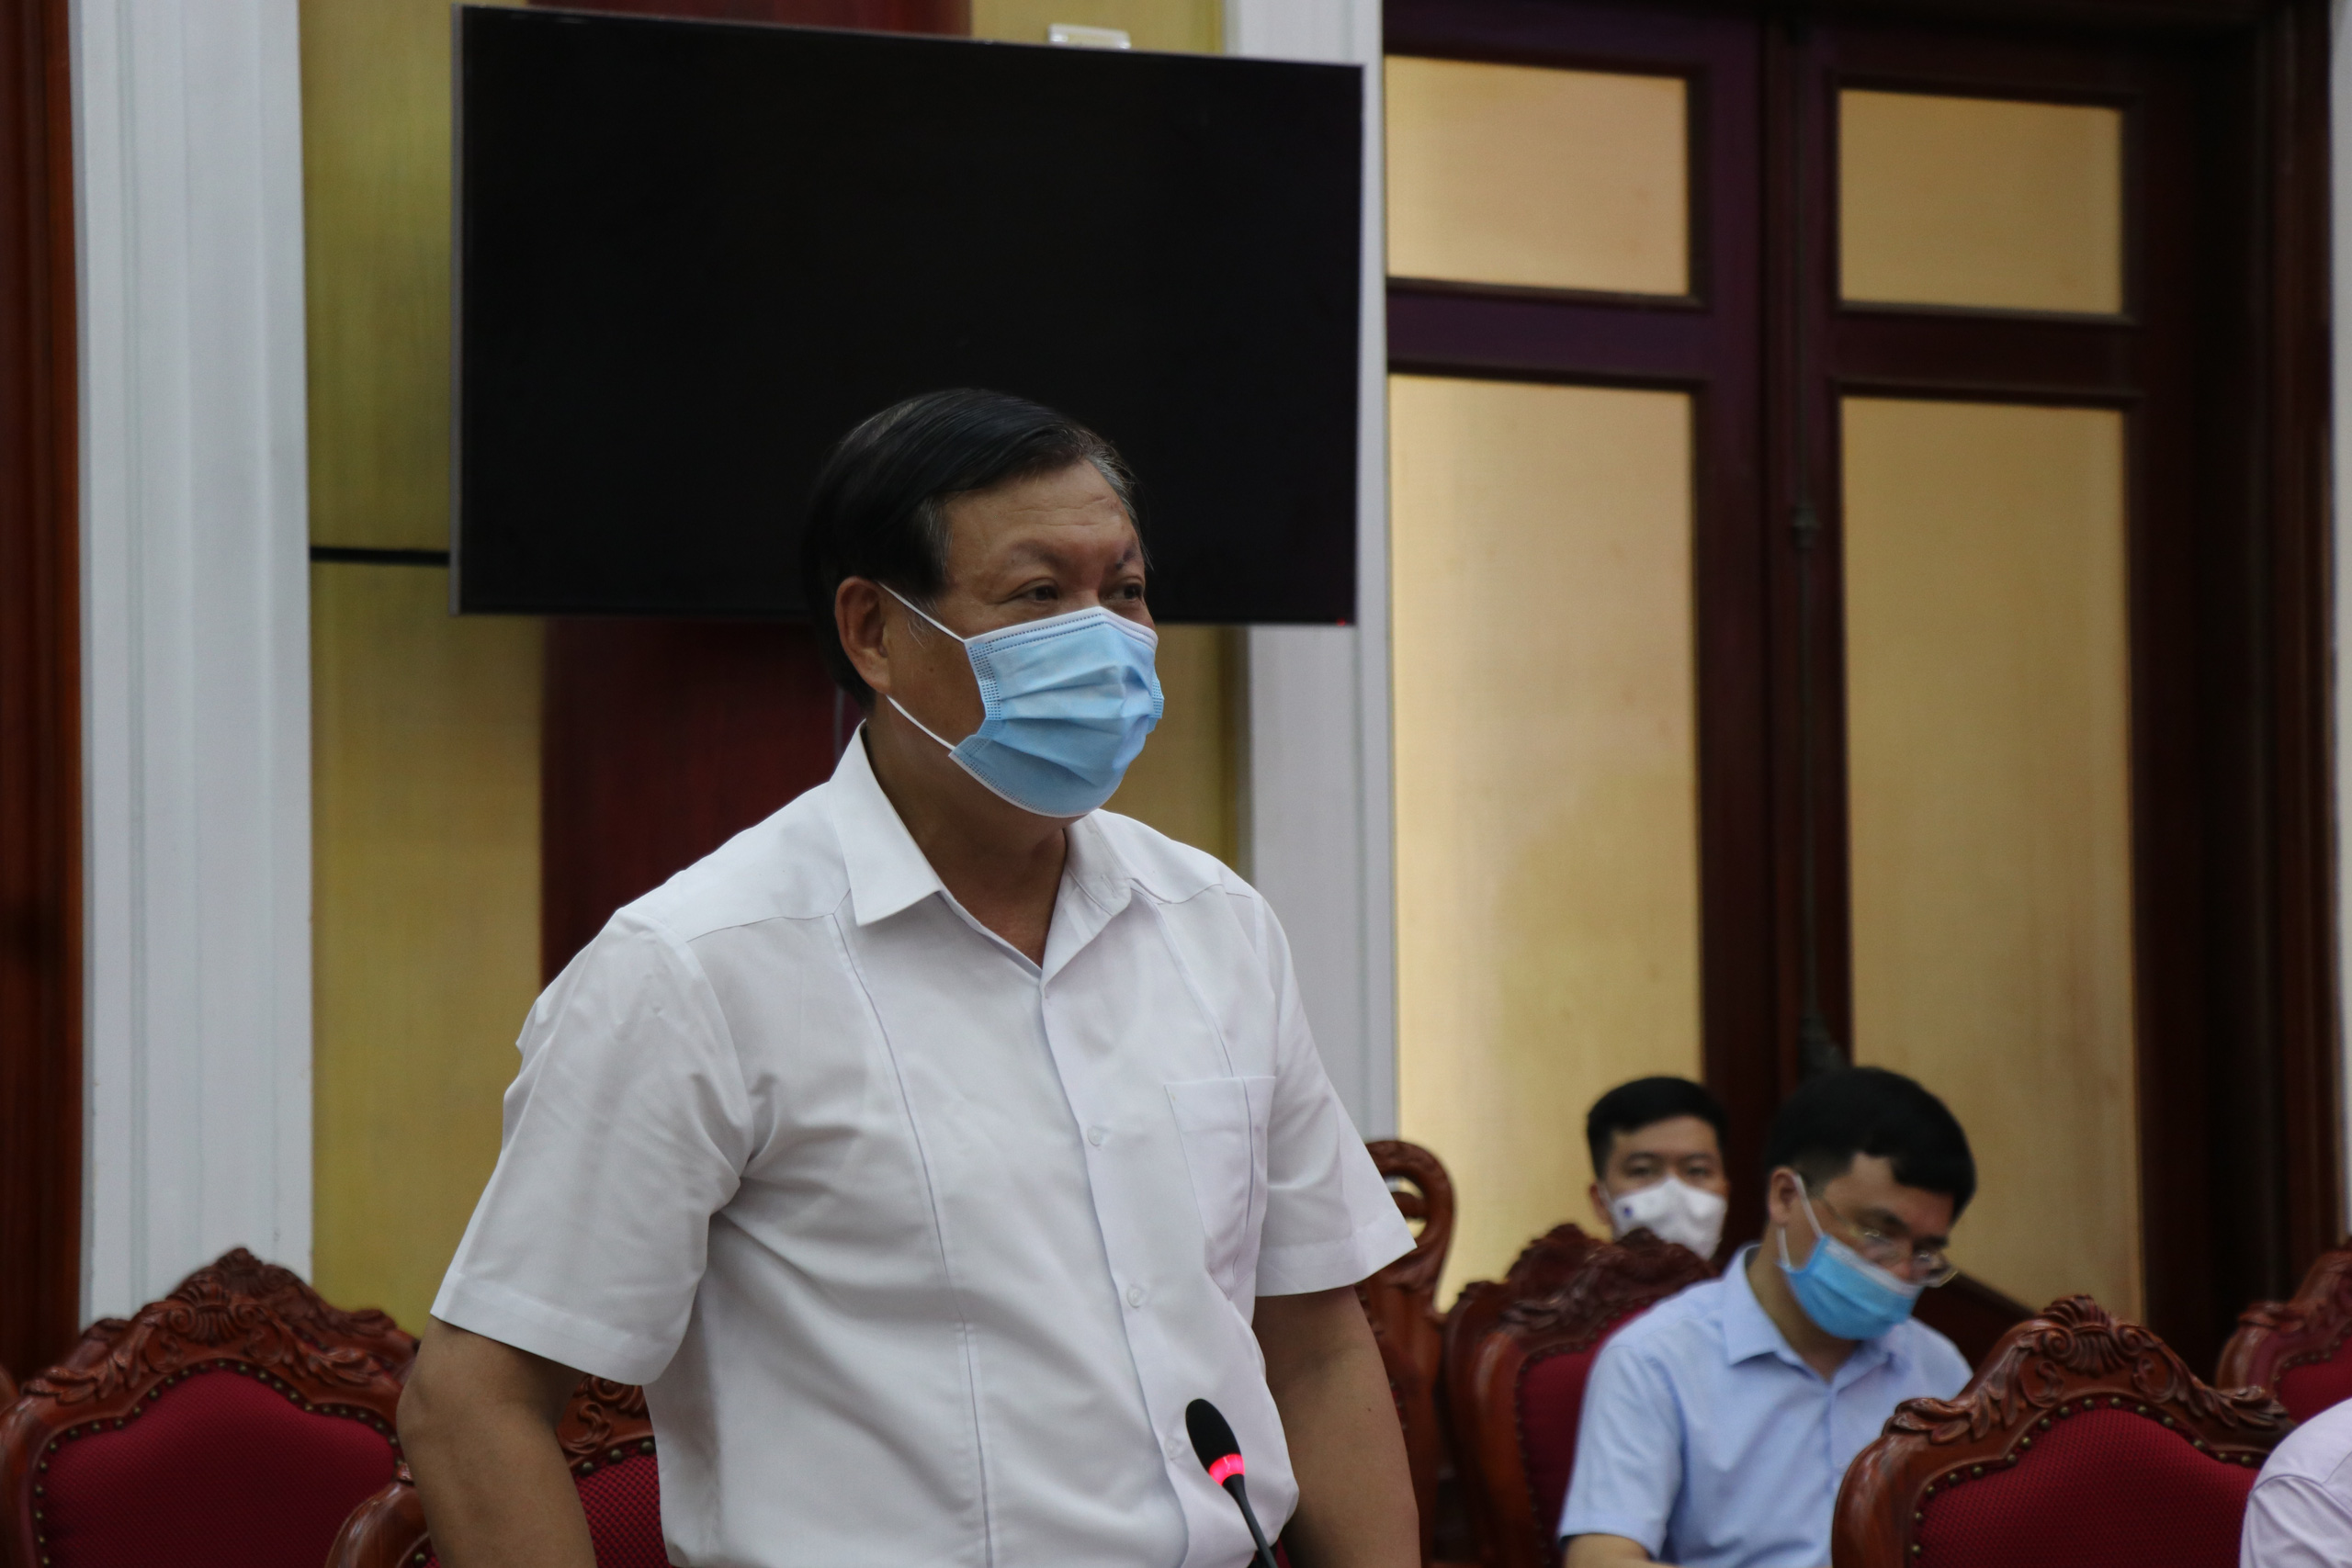 Thứ trưởng Bộ Y tế Đỗ Xuân Tuyên lưu ý Bắc Ninh phòng dịch Covid-19 ở các KCN, cơ sở điều trị, công sở... - Ảnh 1.